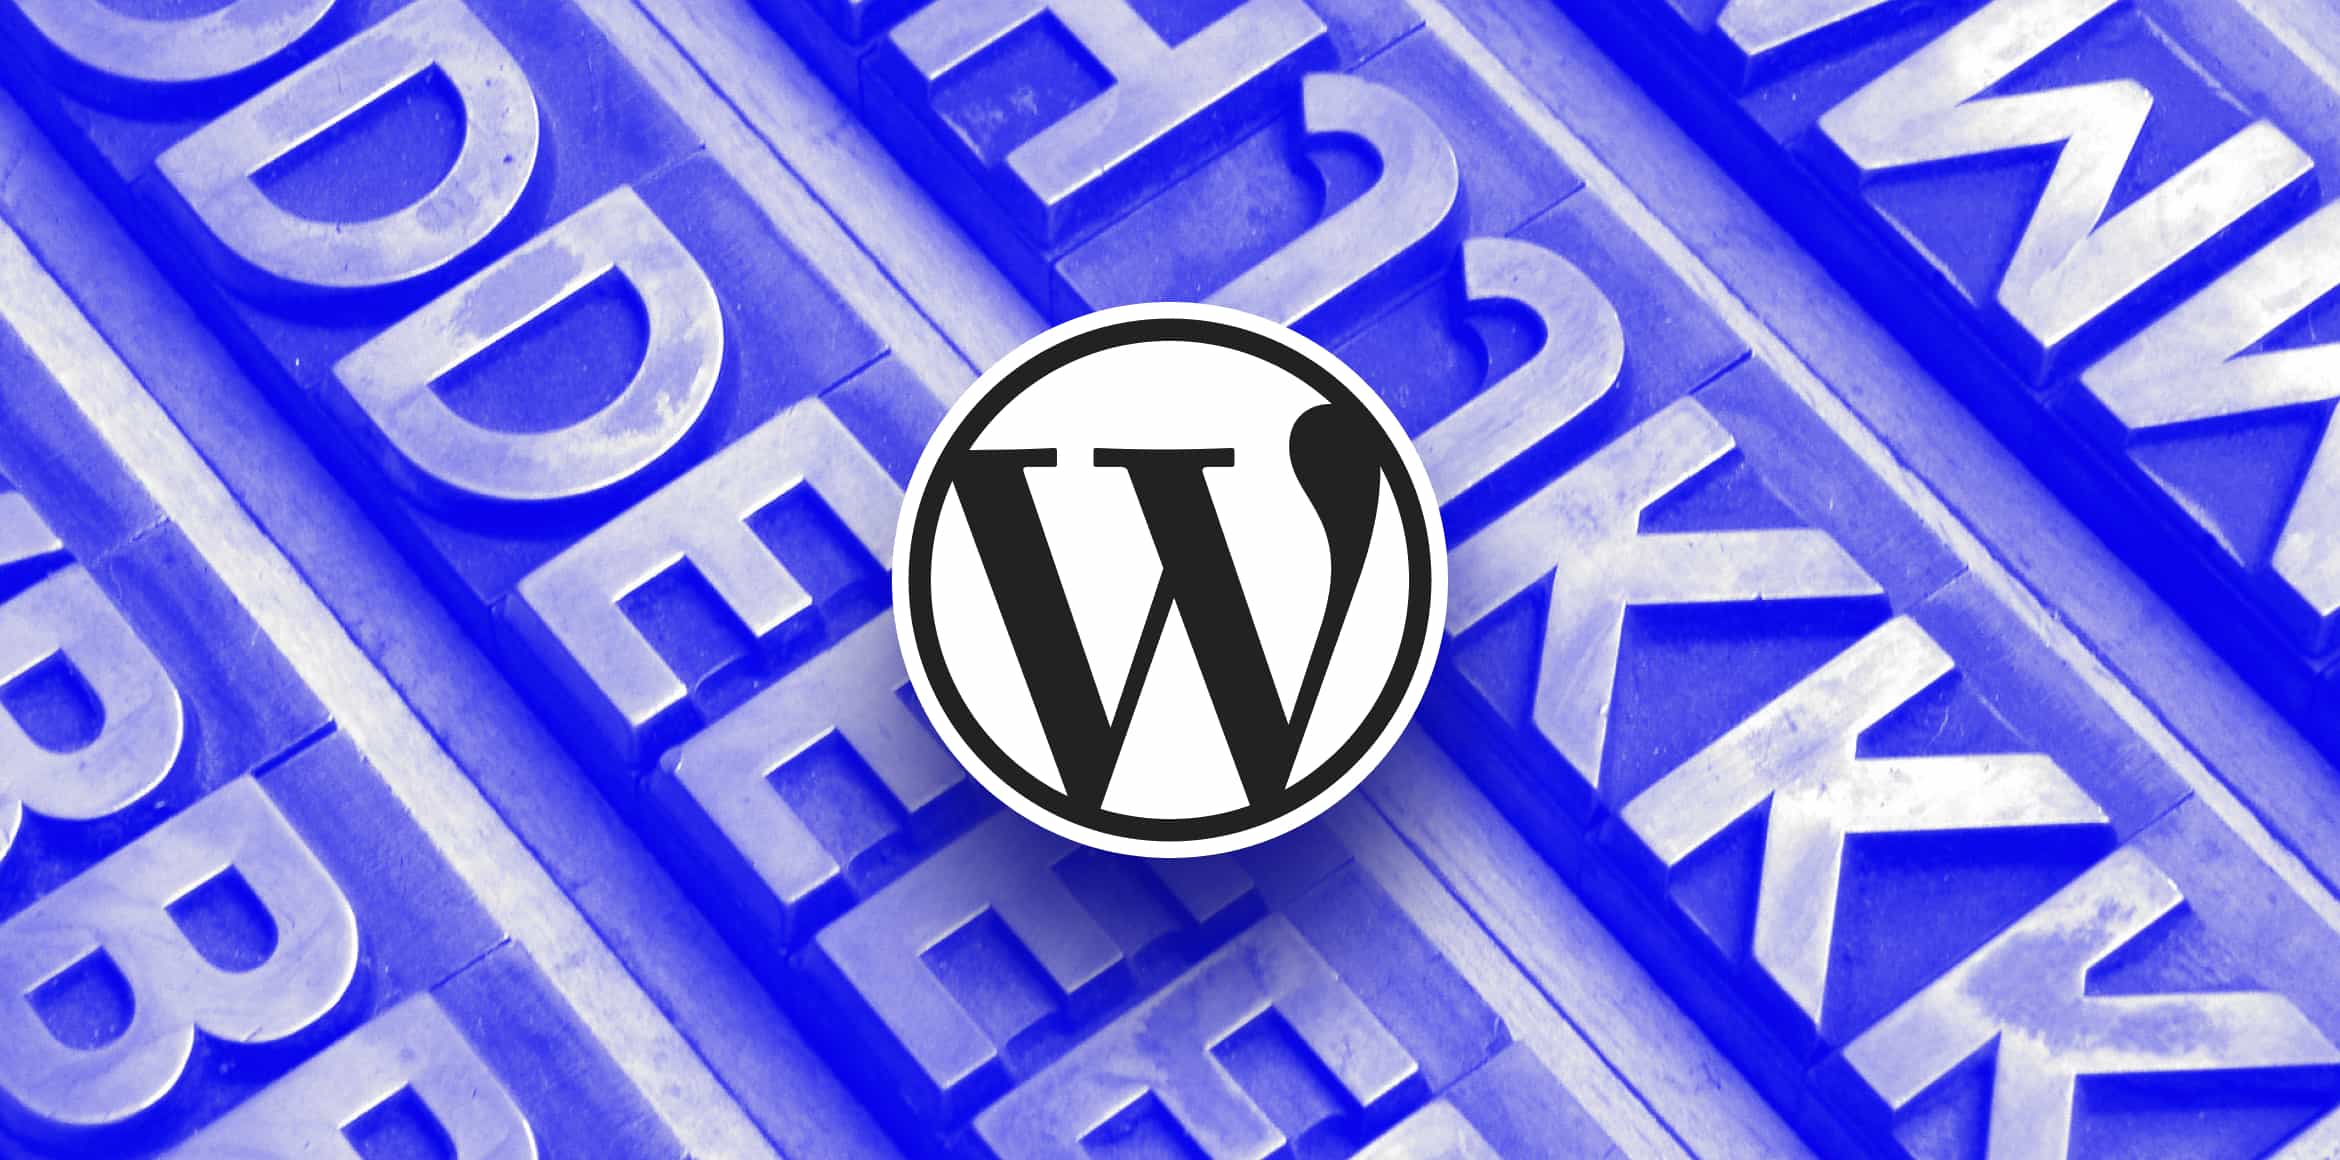 Das WordPress Logo vor einem blauen Hintergrund auf dem verschiedene Buchstaben abgebildet sind